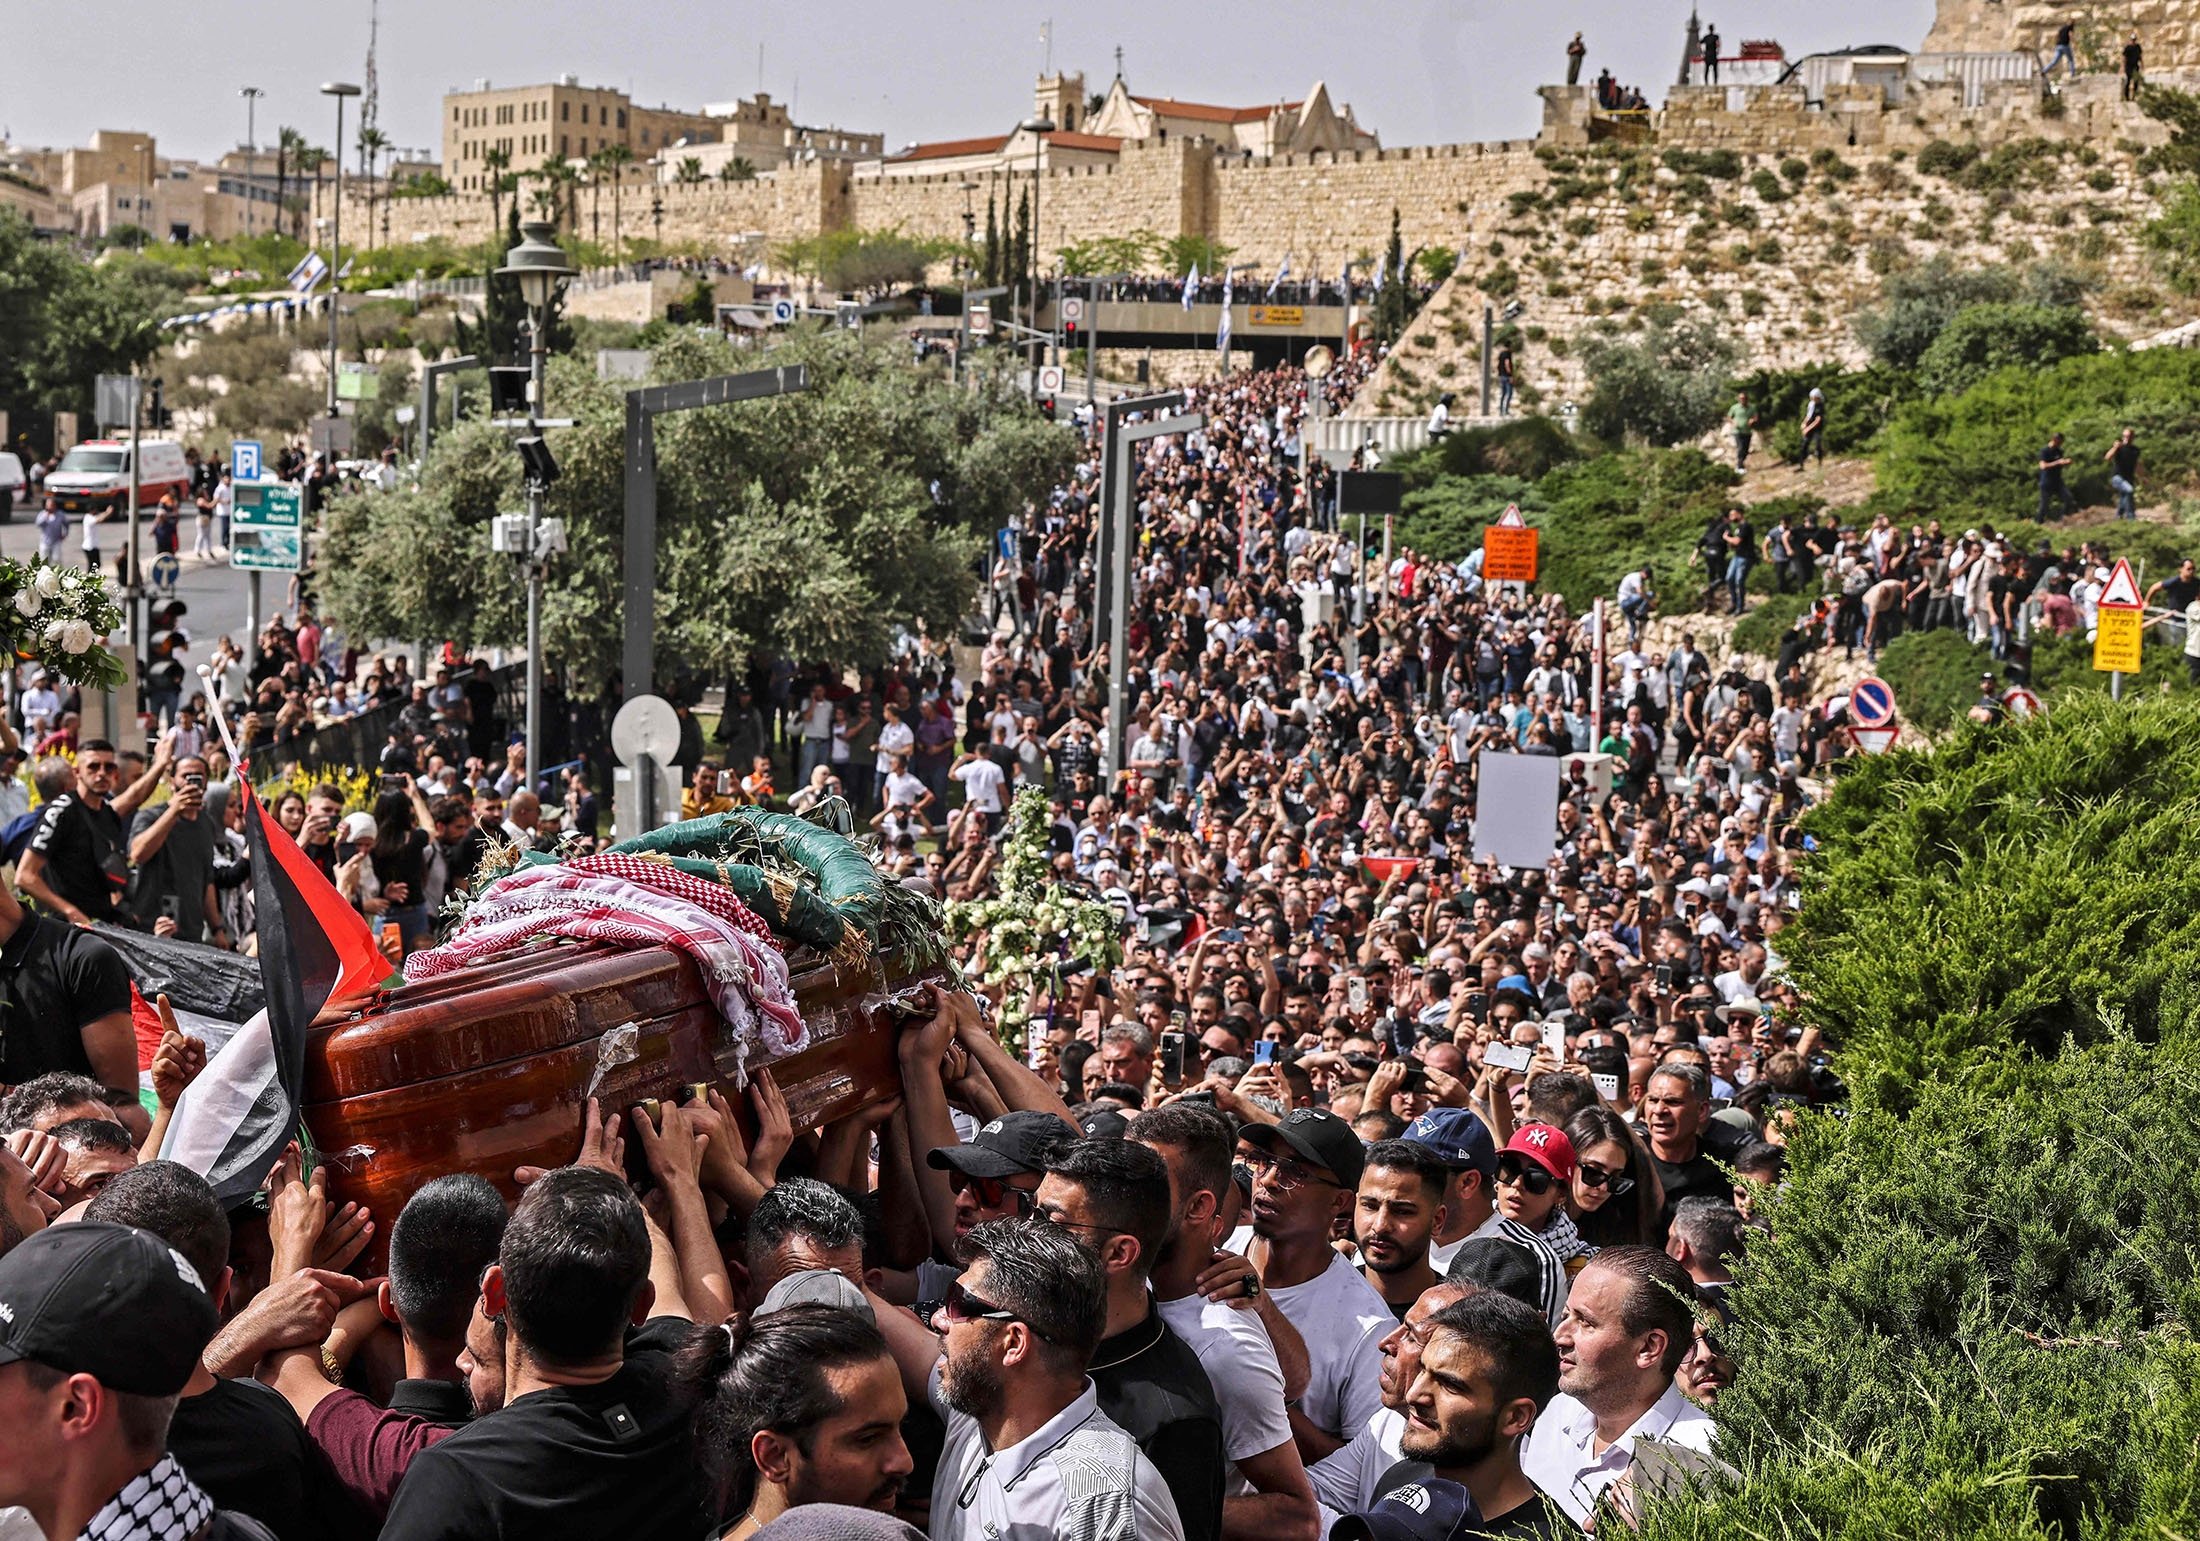 Filistinli yaslılar, öldürülen El Cezire gazetecisi Shireen Abu Aklel'in tabutunu bir kiliseden mezarlığa doğru taşıyorlar, 13 Mayıs 2022'de işgal altındaki Filistin'de Doğu Kudüs'teki cenaze alayı sırasında. (AFP Photo)